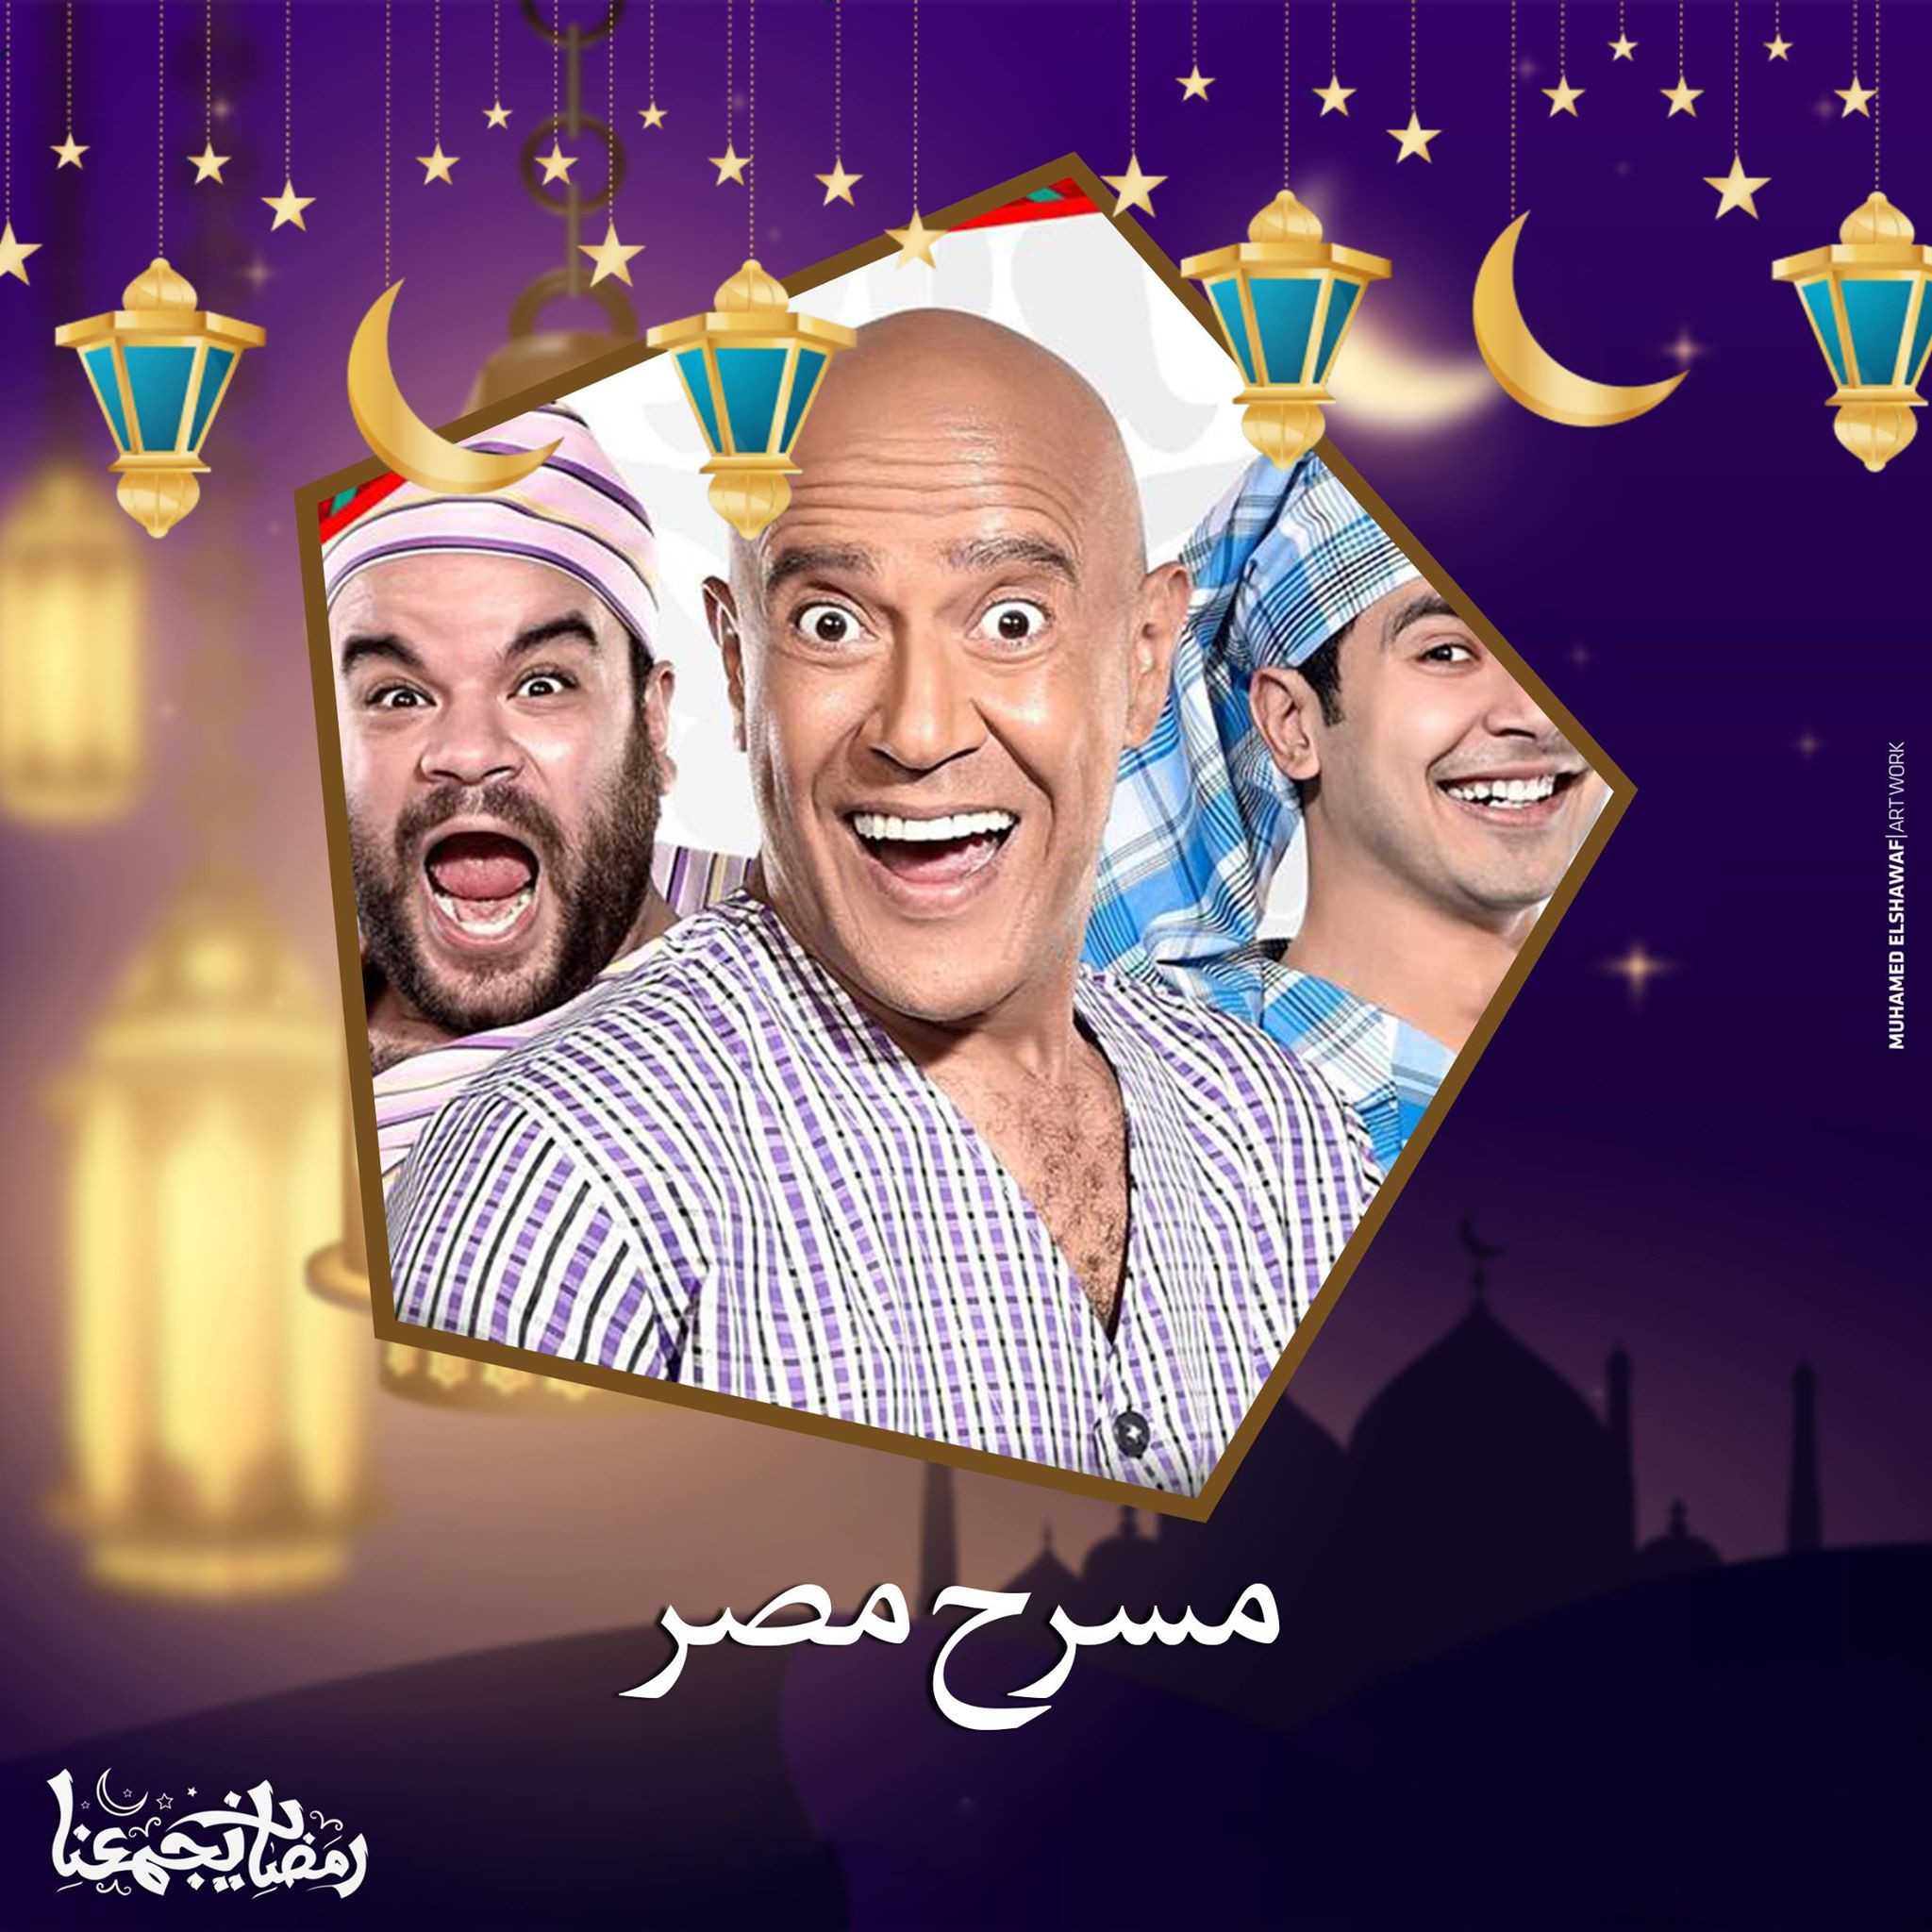 برنامج مسرح مصر الموسم الرابع حلقة 22 والاخيرة